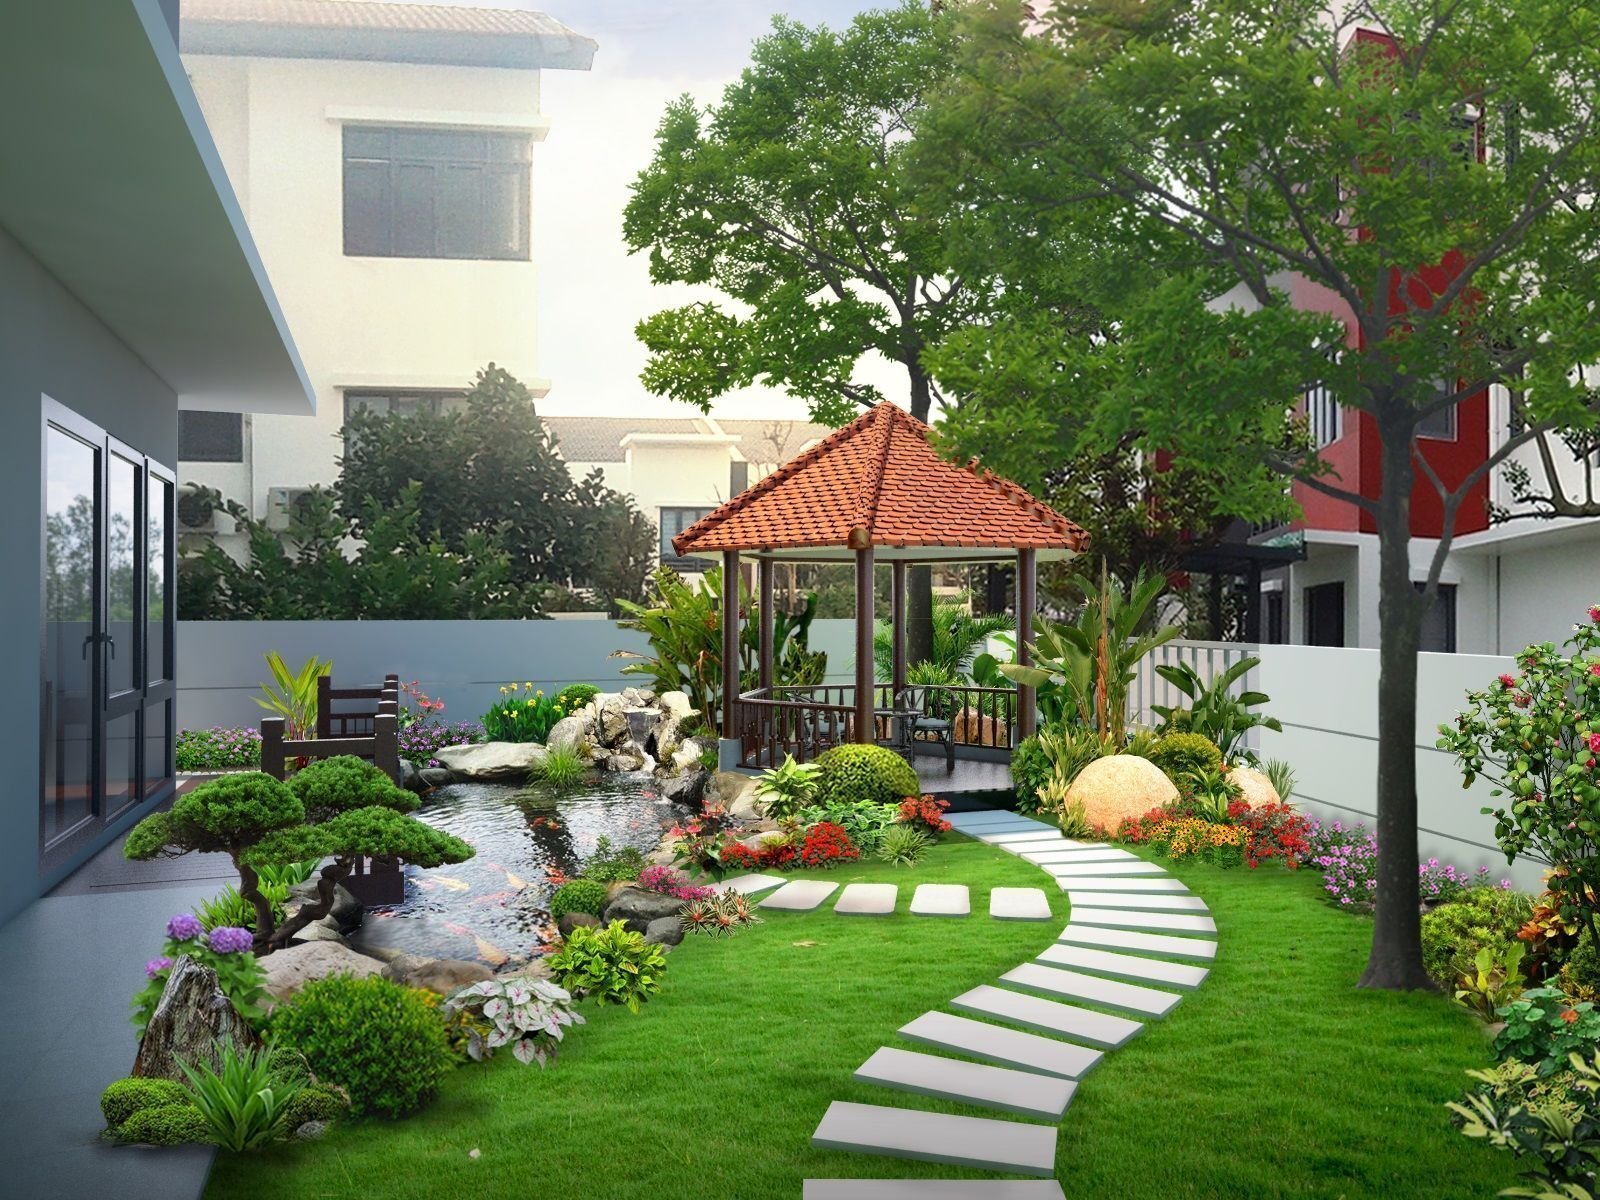 Tư vấn thiết kế nhà vườn biệt thự - Houseland.com.vn